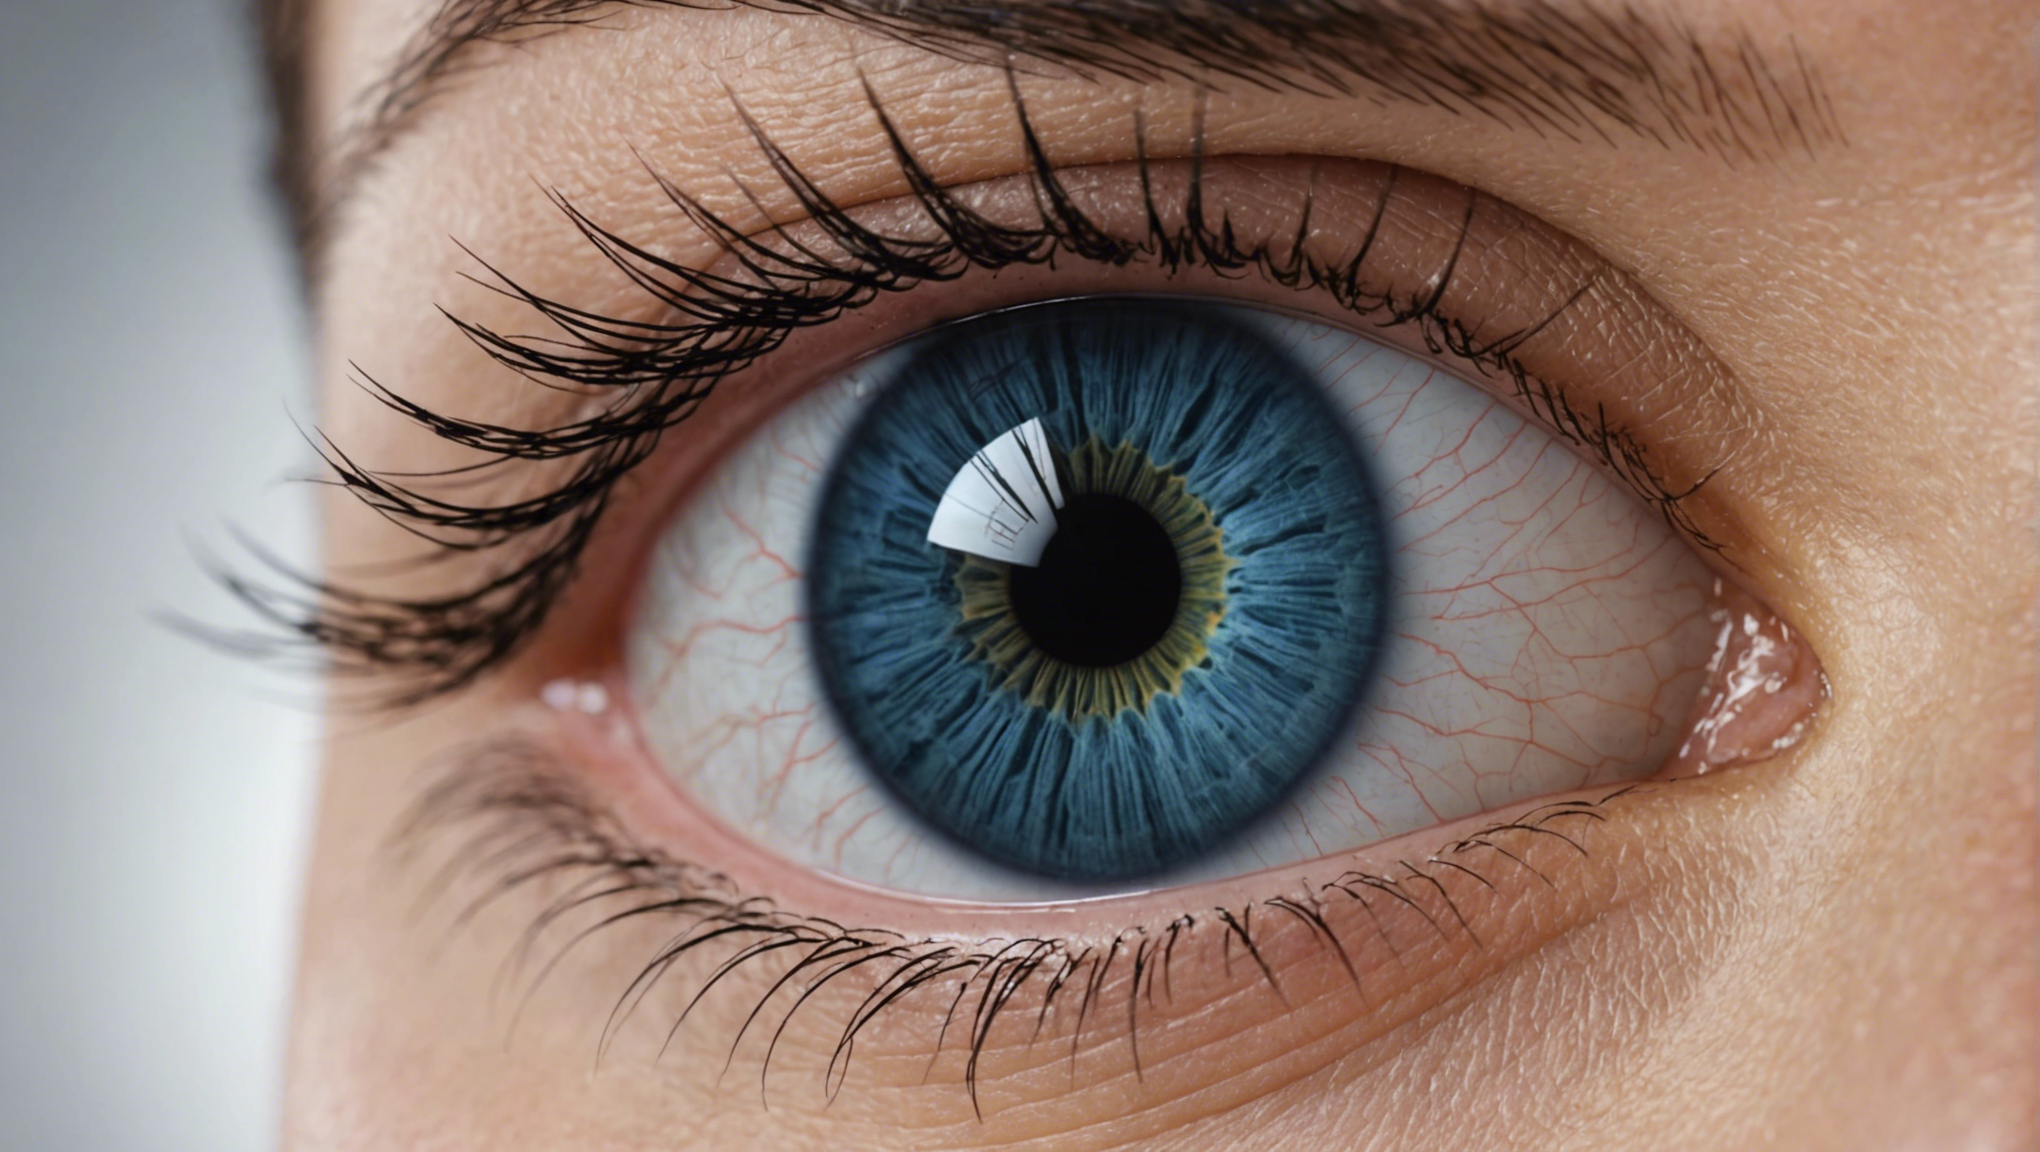 découvrez les avantages du lasik femto-seconde pour une chirurgie oculaire précise et efficace. consultez nos experts pour en savoir plus.